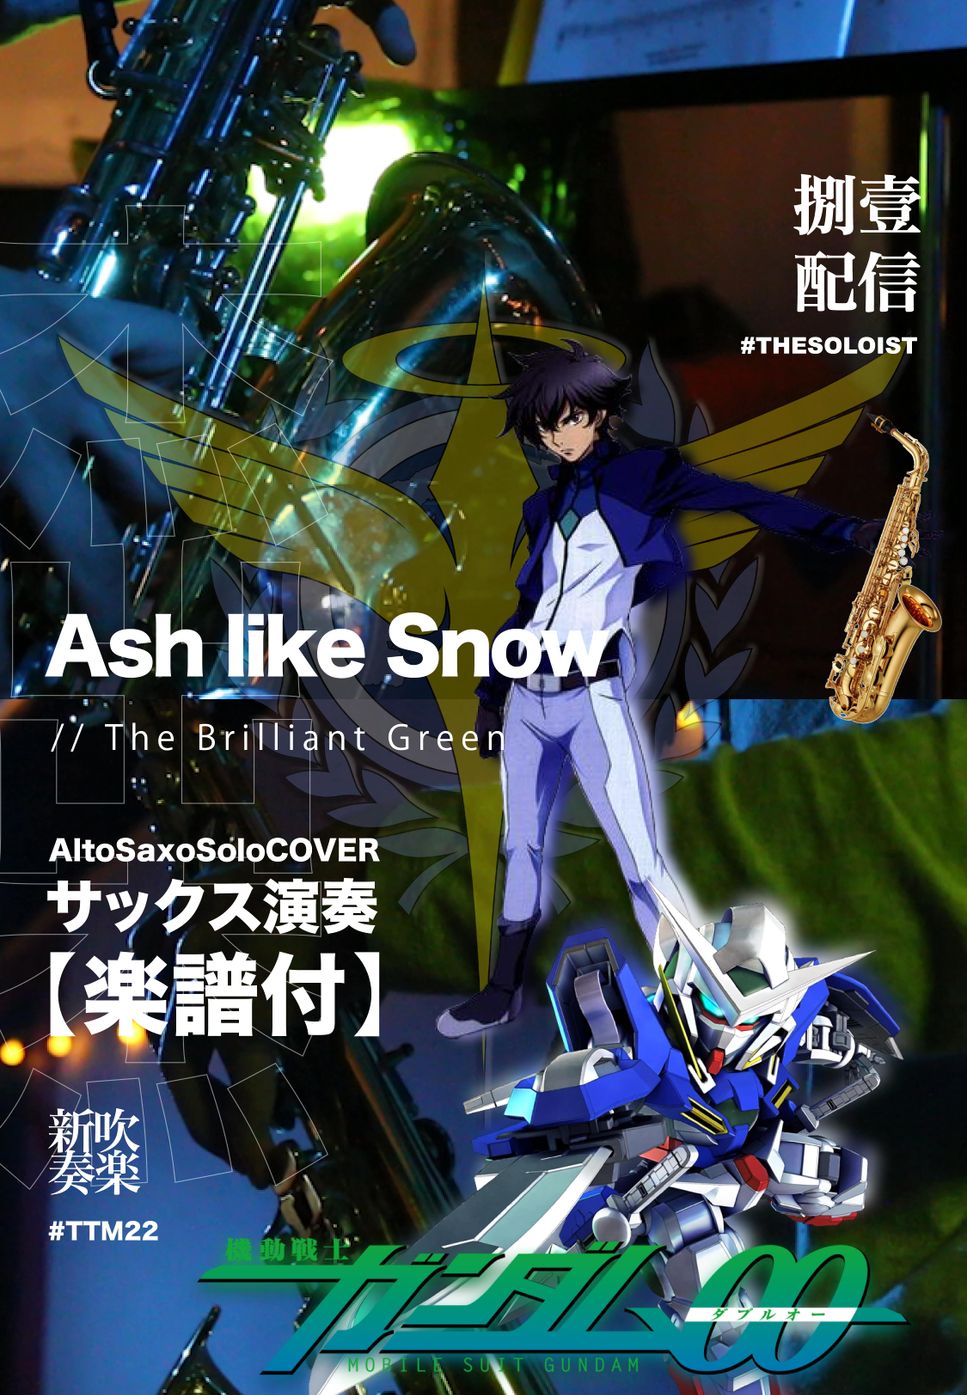 機動戦士ガンダム00 - Ash like Snow (色士風演奏) by FungYip